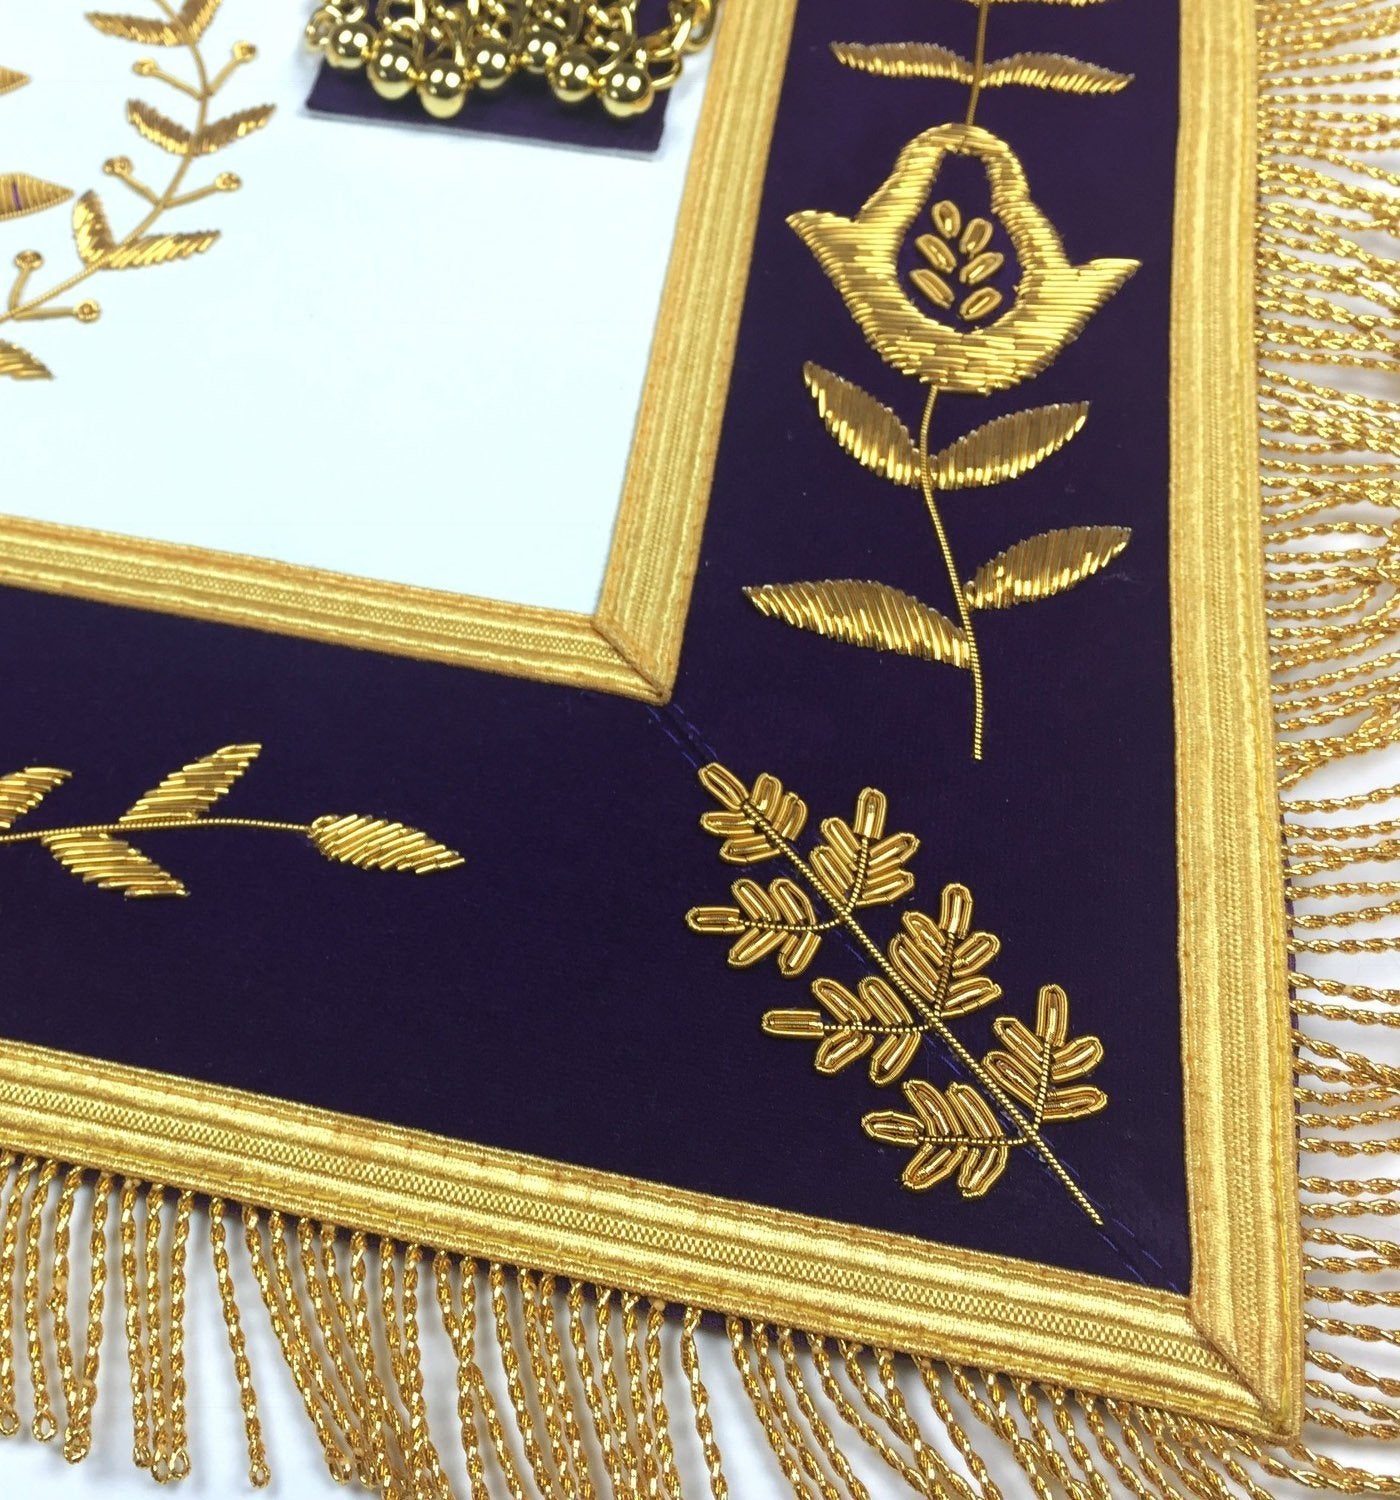 Past Master Blue Lodge Apron - Royal Purple Velvet with Gold Fringe - Bricks Masons